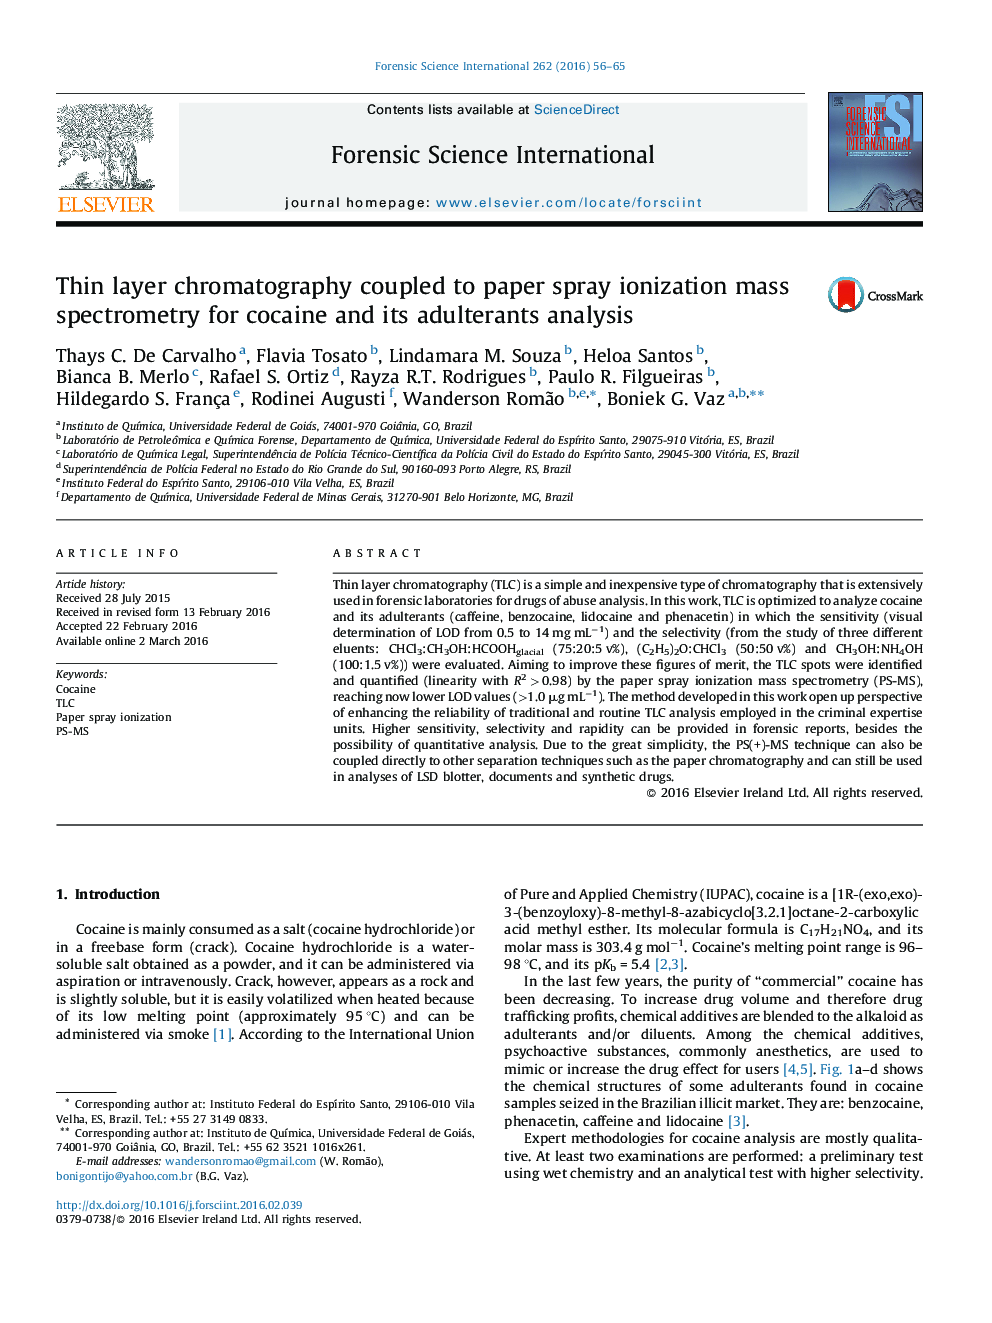 کروماتوگرافی لایه نازک برای کوکائین به طیف سنجی جرمی اسپری مقاله یونیزاسیون همراه و تجزیه و تحلیل آن متقلب